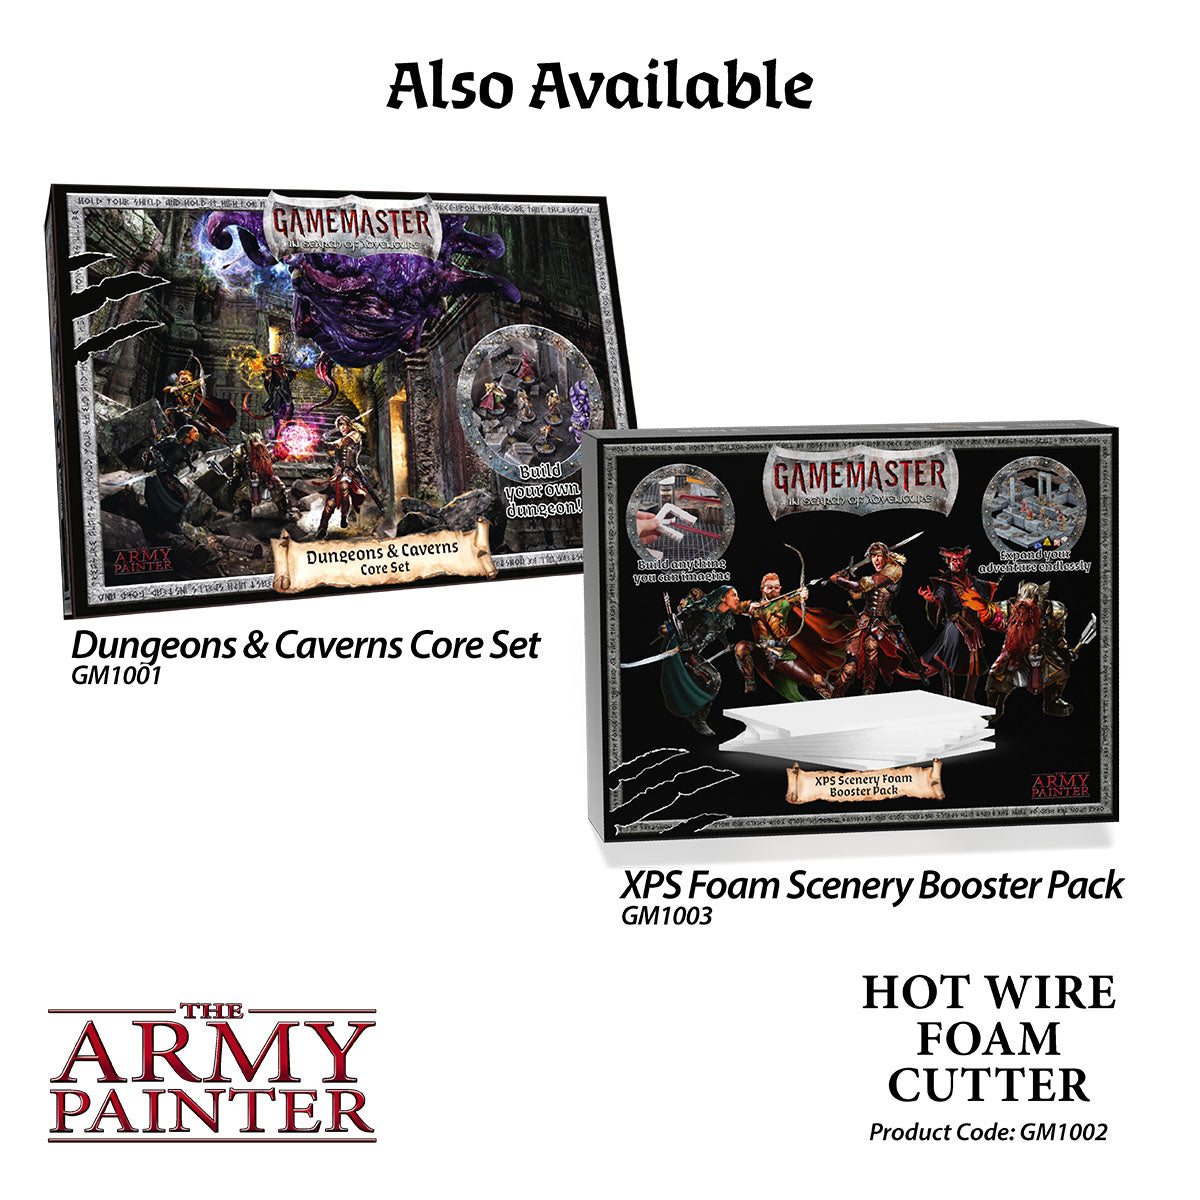 GameMaster: Hot wire foam cutter